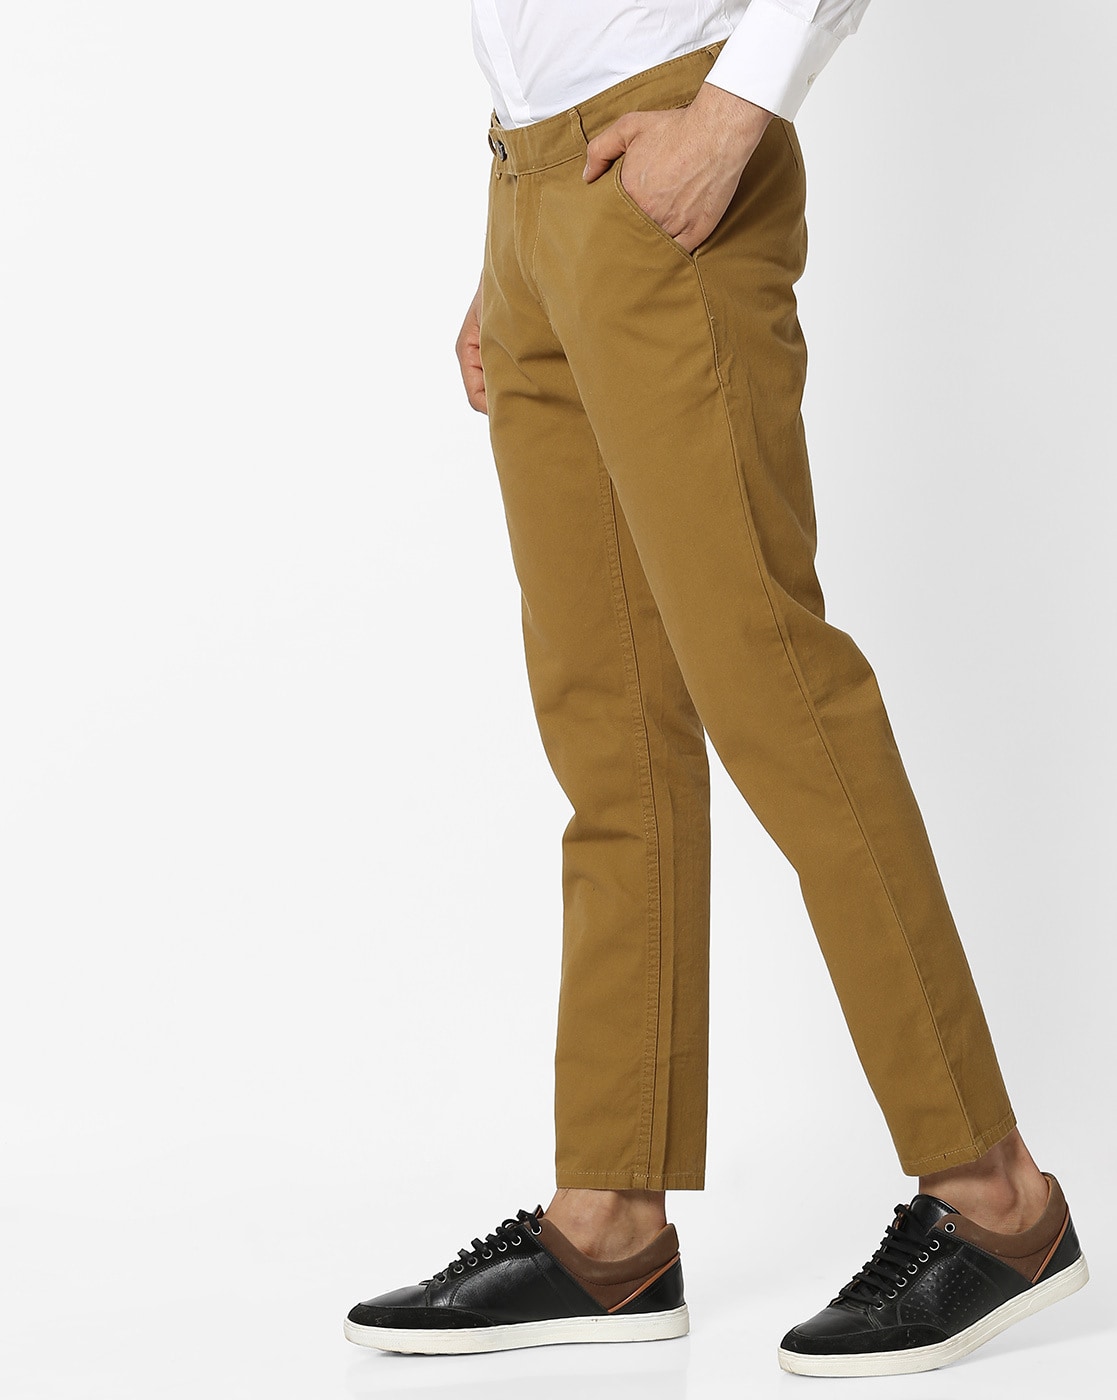 Buy Mustard Yellow Trousers  Pants for Men by Hubberholme Online  Ajiocom